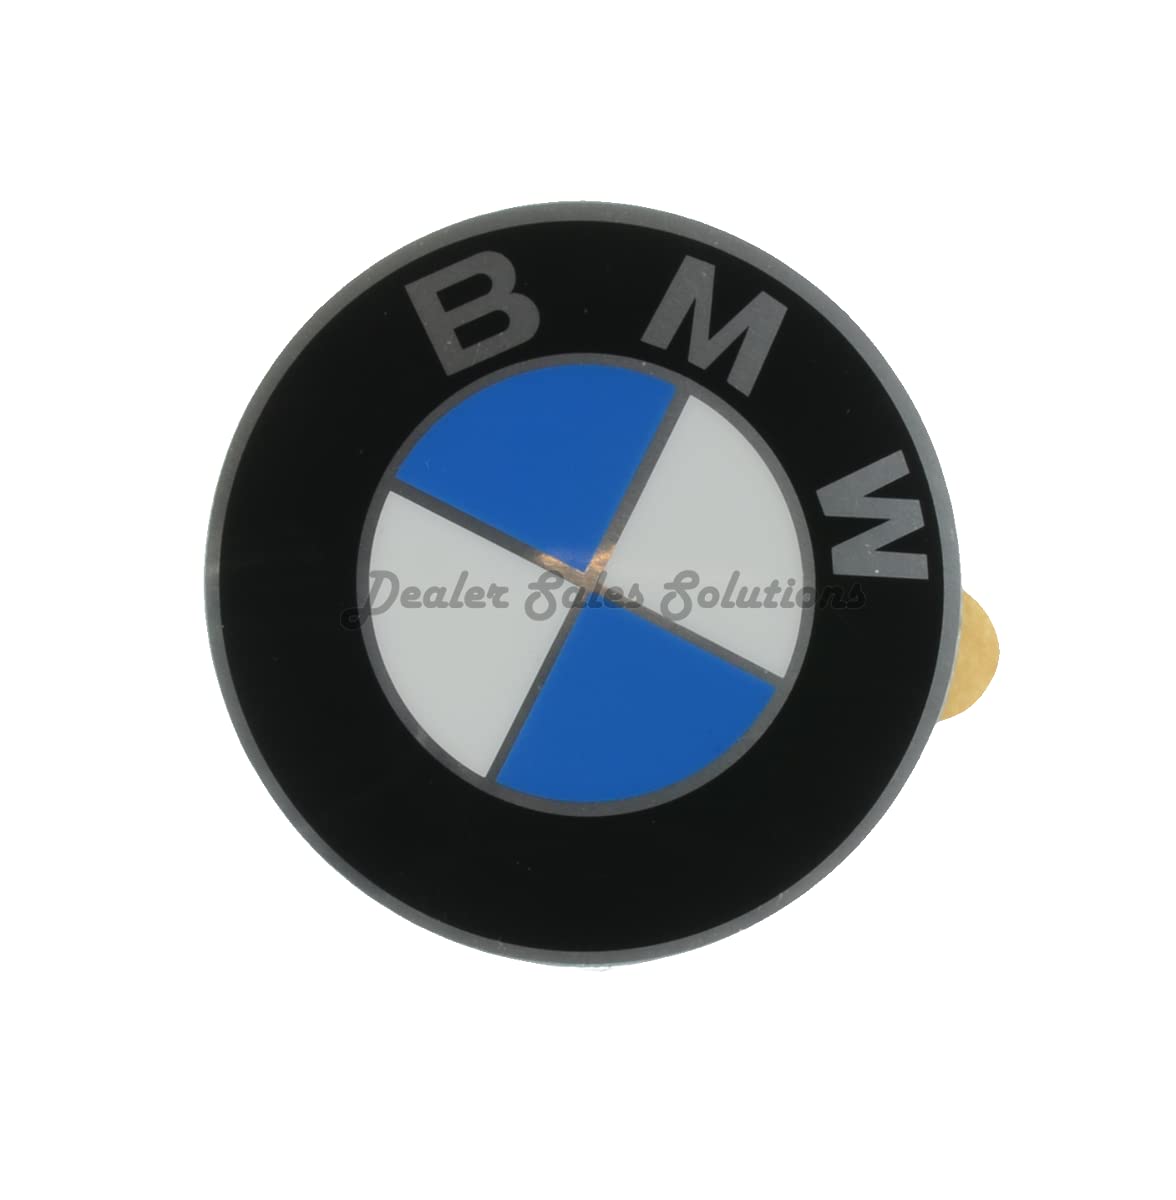 BMW Original-Rad-Mitte-Kappen-Emblem-Abziehbild-Aufkleber 58mm von BMW